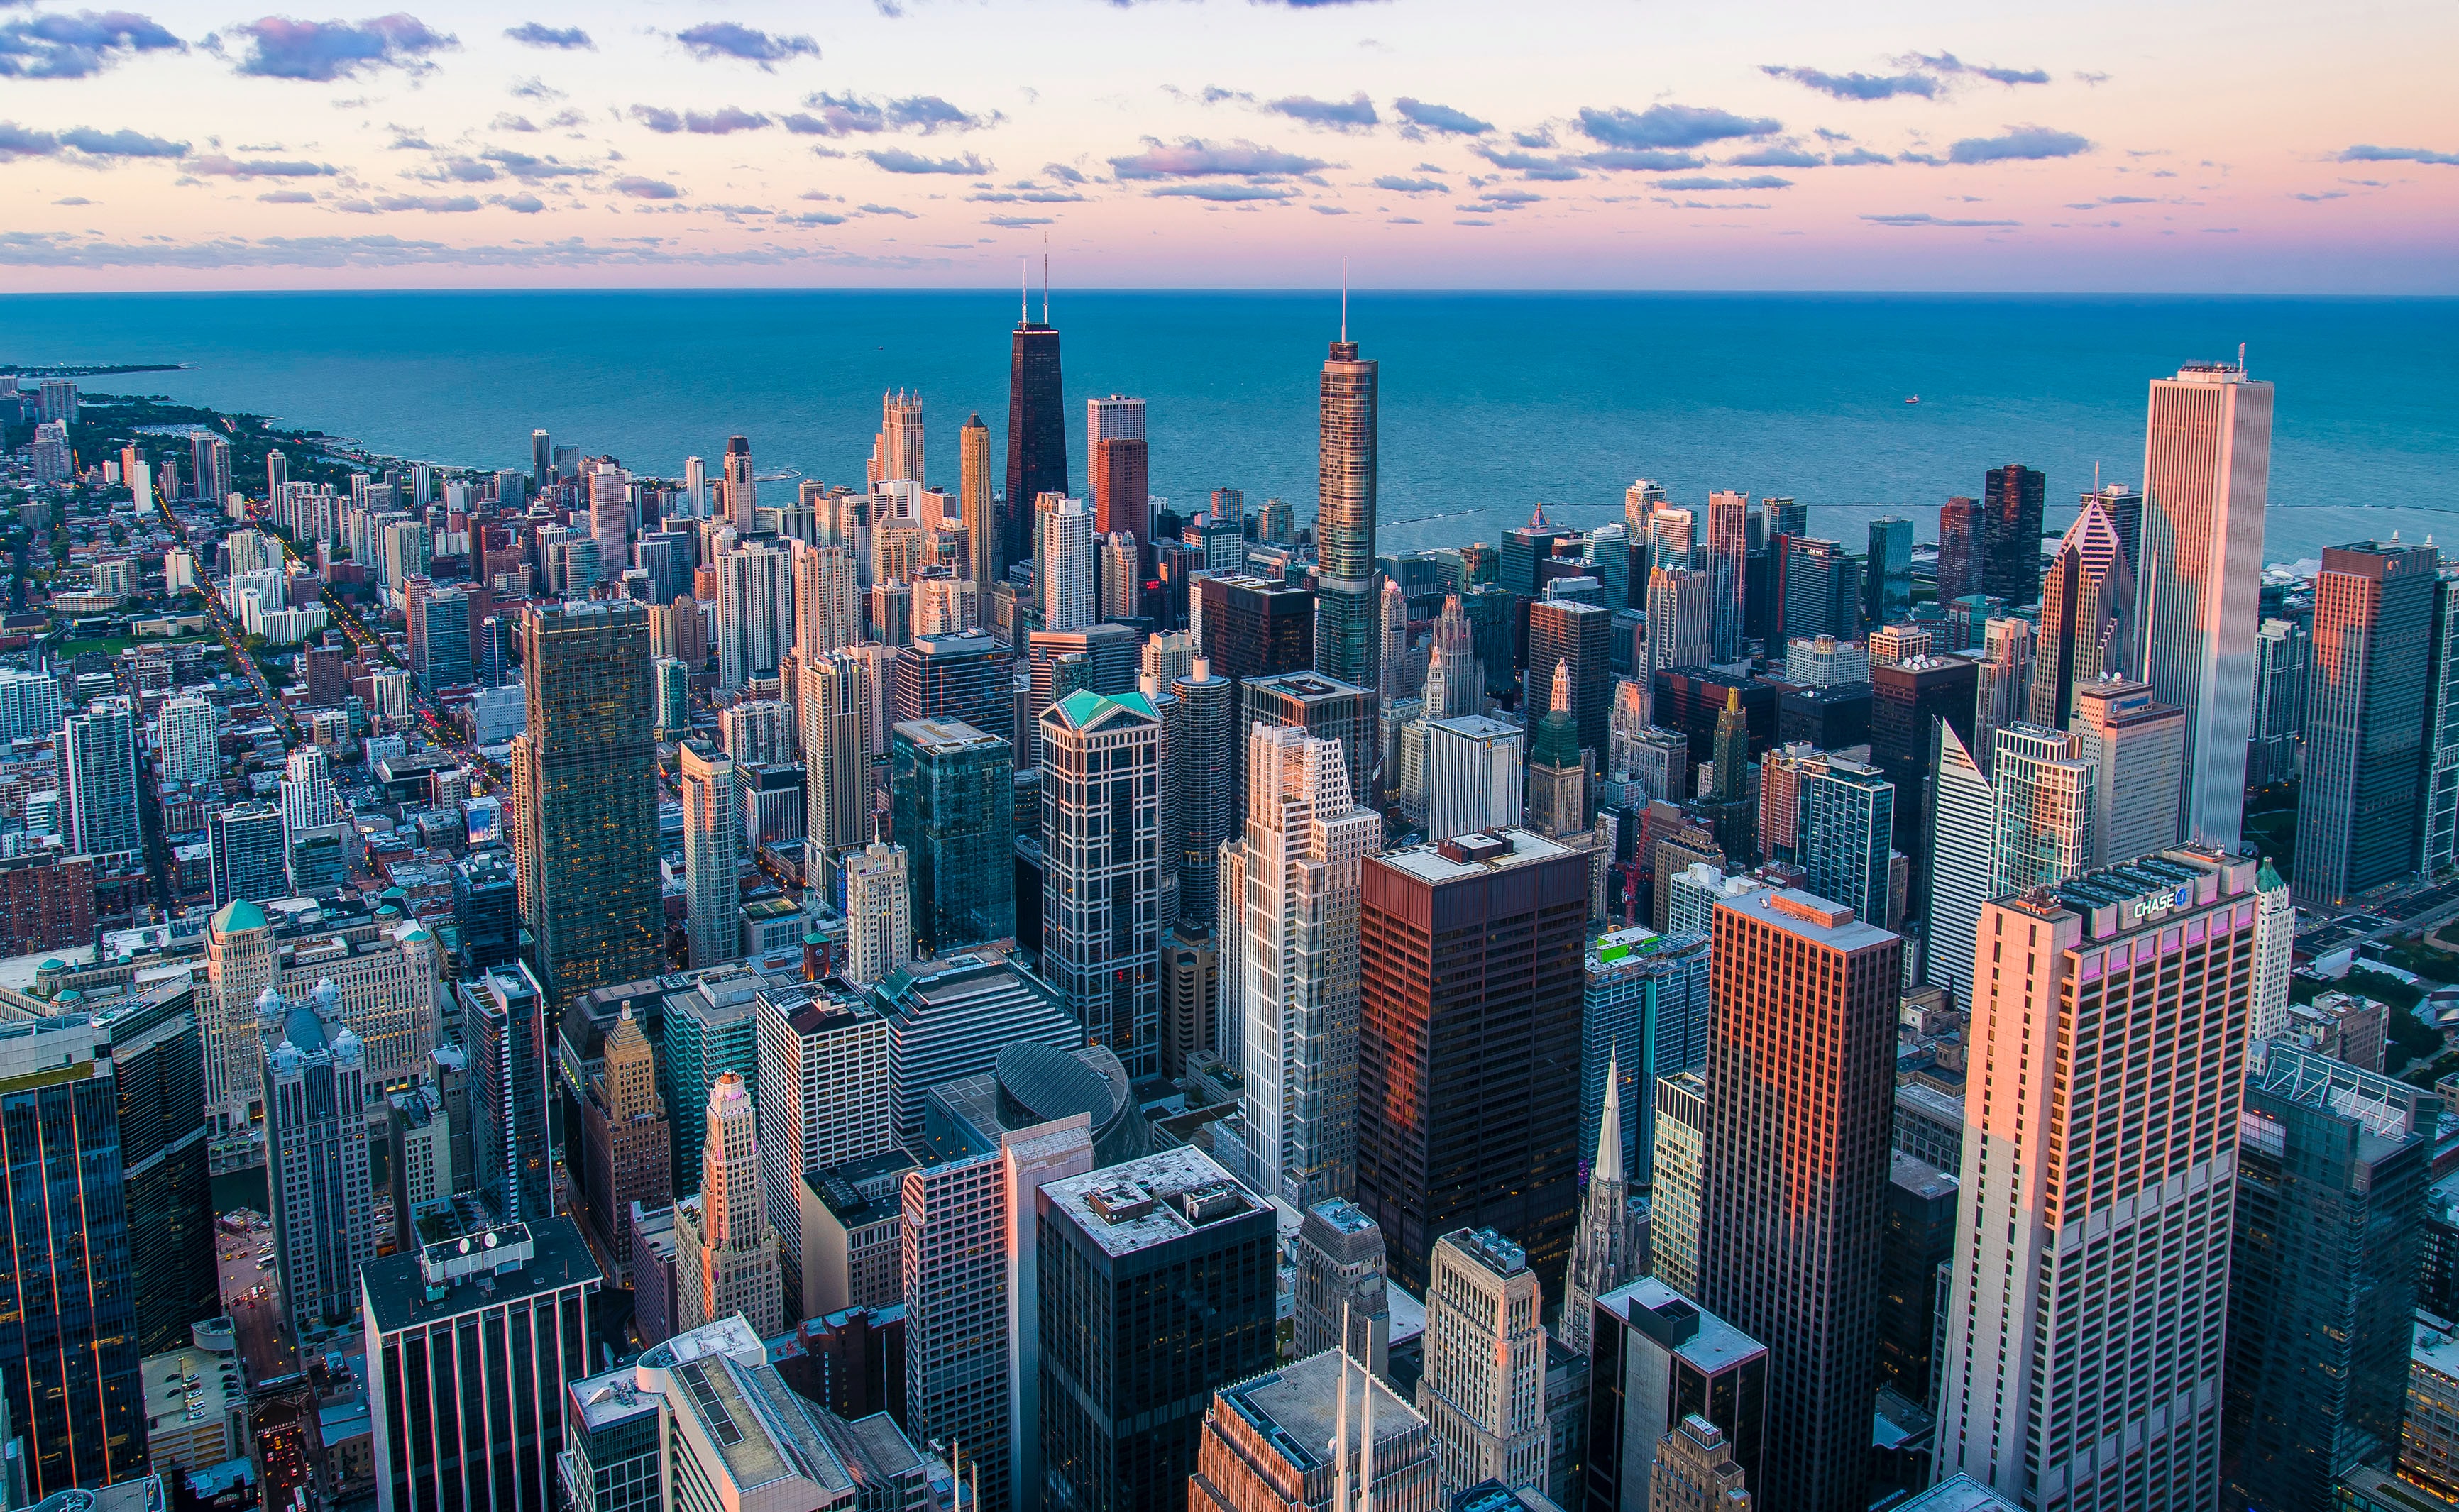 미국 시카고 윌리스 타워에서 내려다본 시카고의 해질녘 하늘과 바다&#44; 그리고 빌딩들의 모습